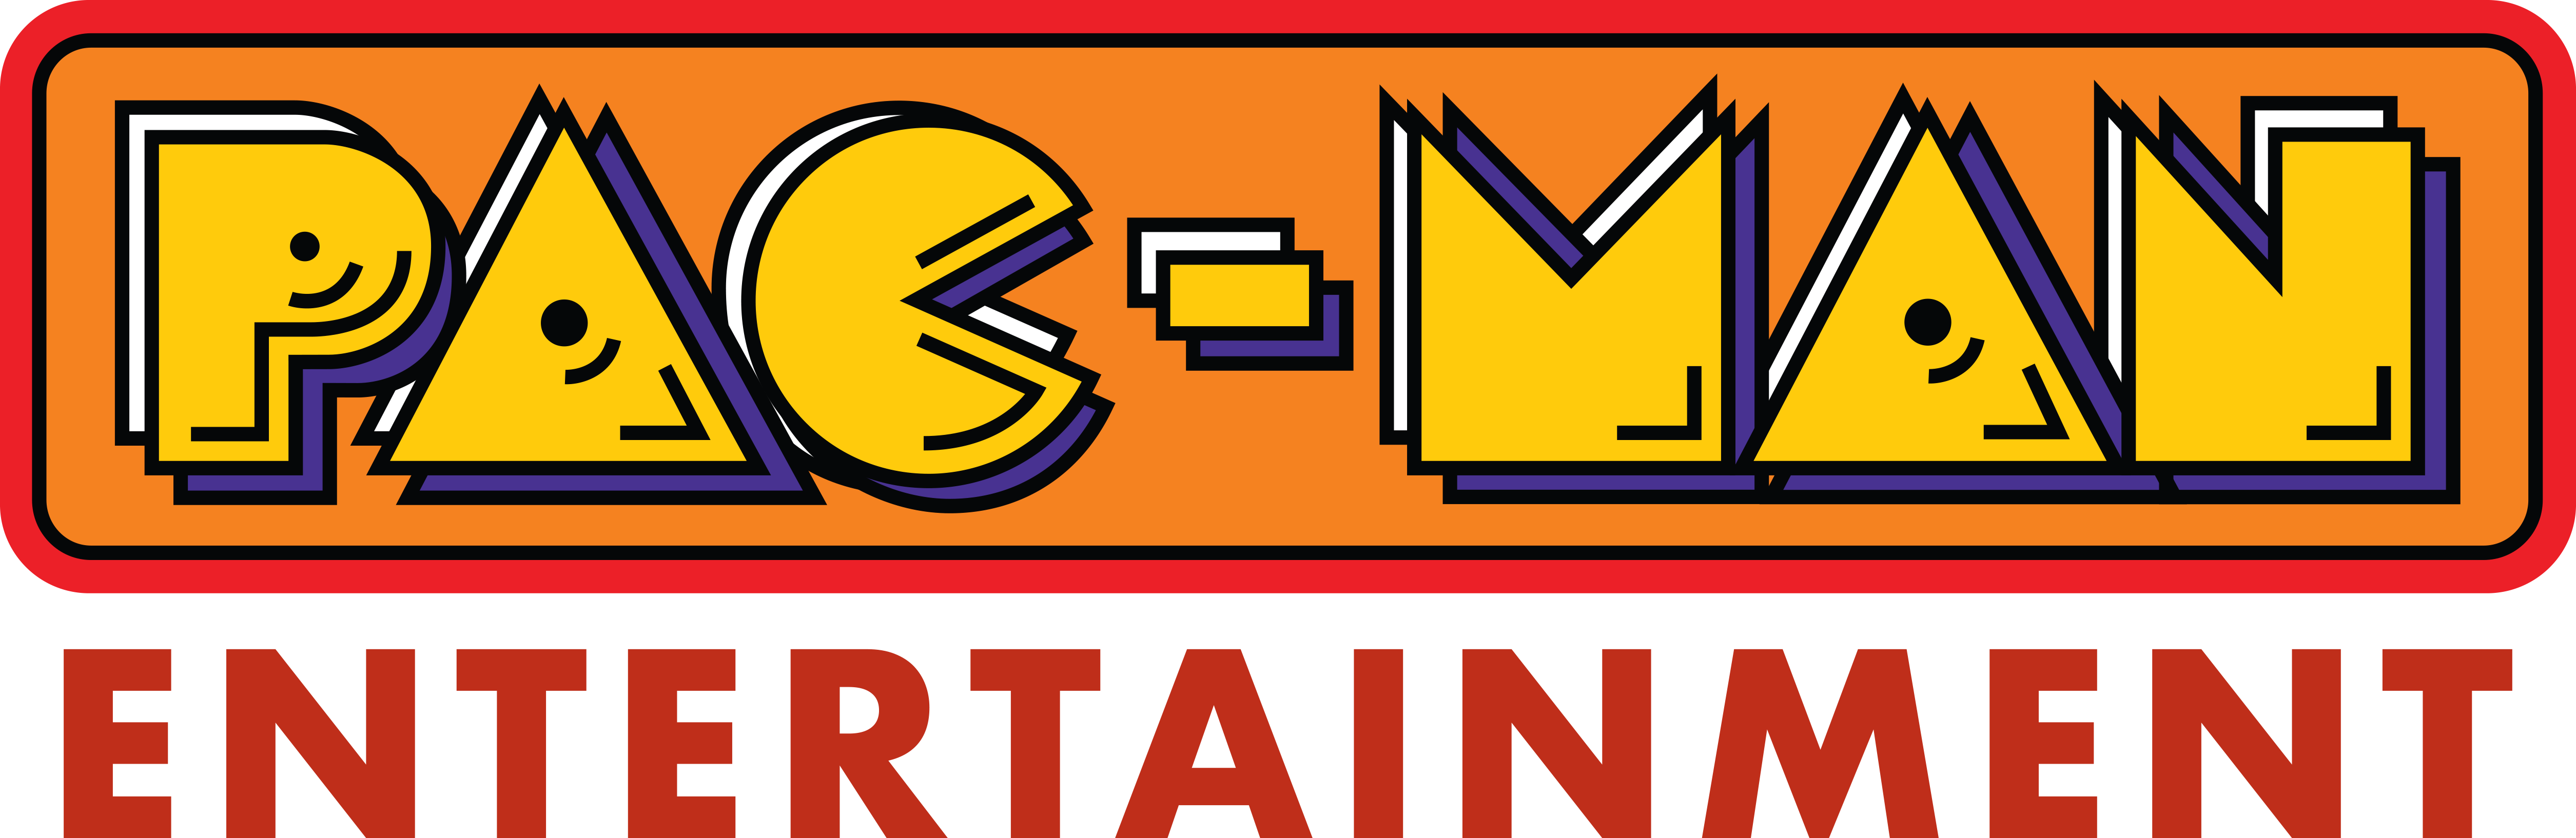 Pme Logos 09 17 - Pac Man Logo Png (5020x1634), Png Download